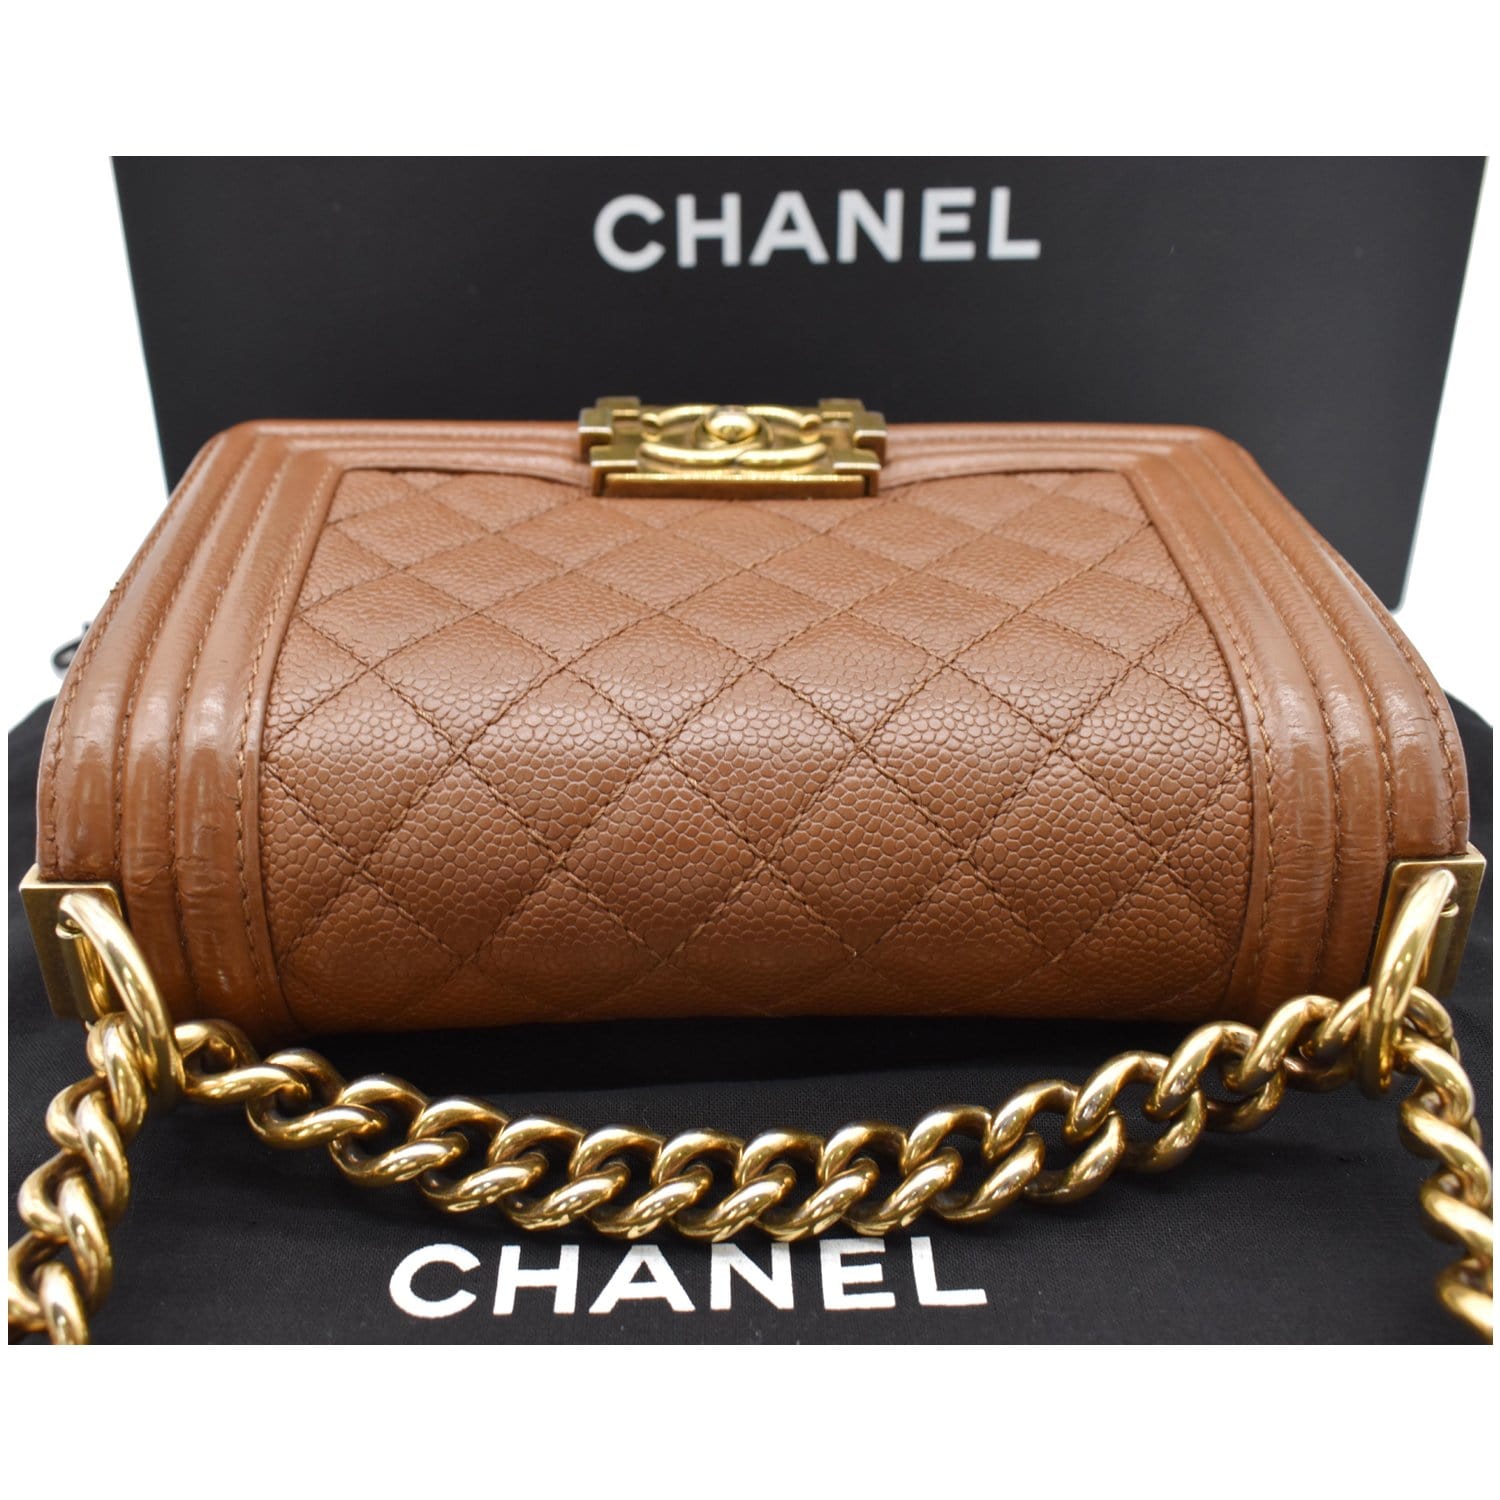 Heritage Vintage: Chanel Large Beige Lambskin Leather Camera Bag